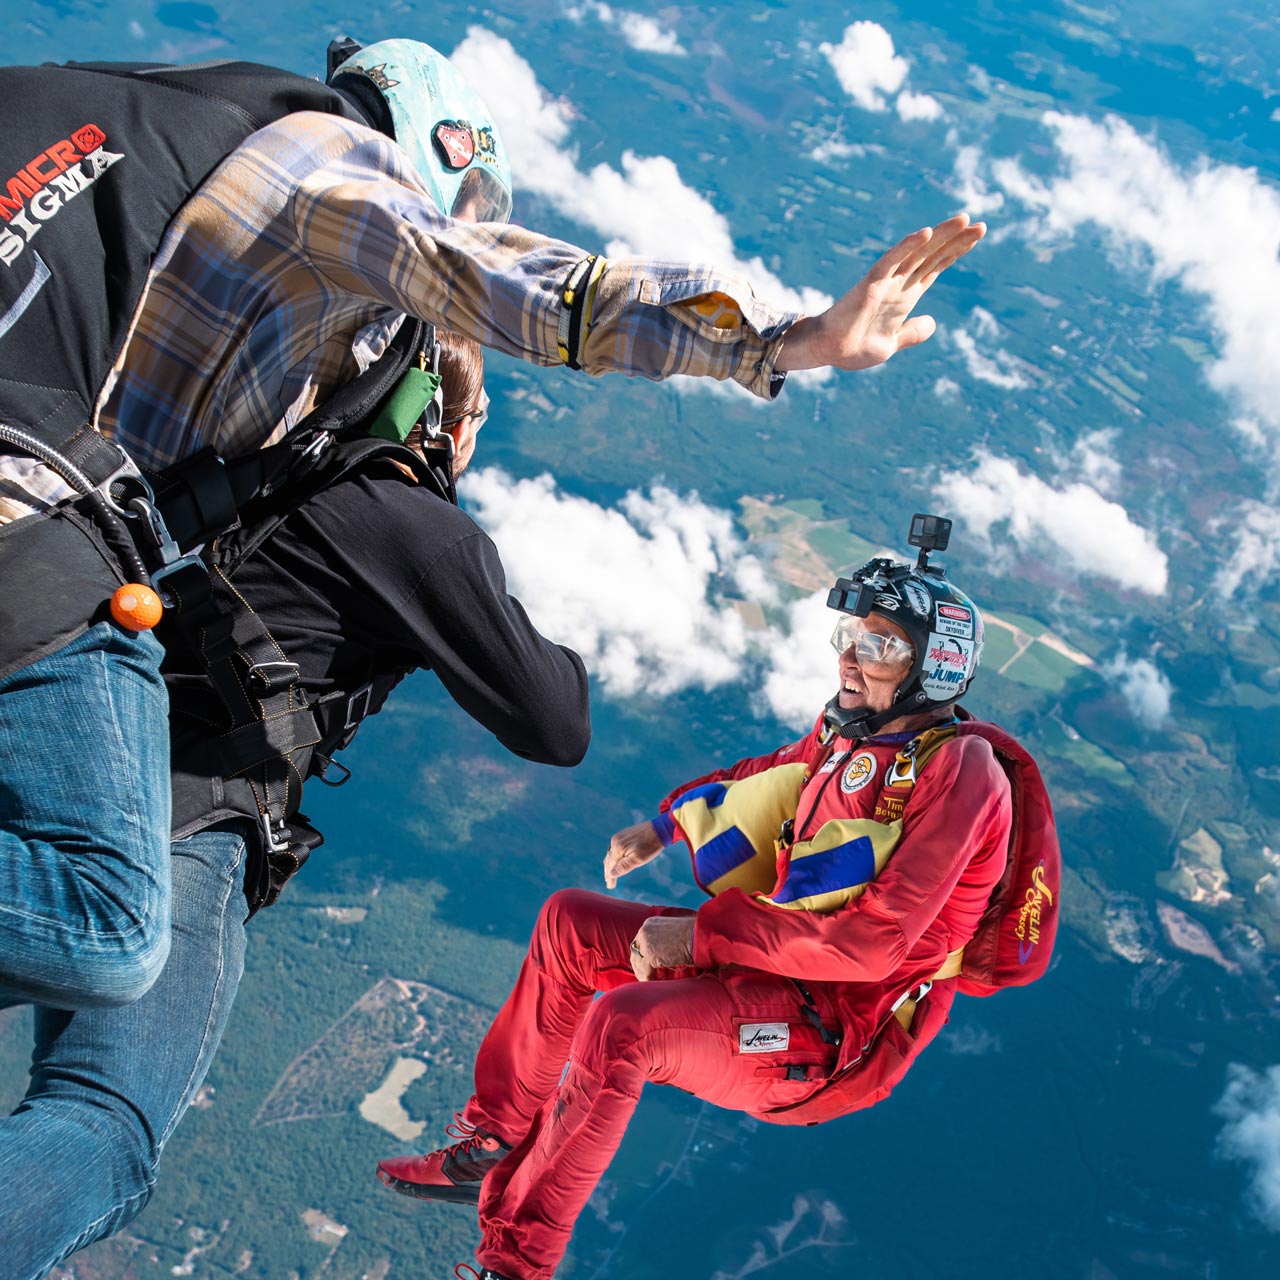 Kan beregnes klasselærer sæt ind Guide to Skydiving Gear and Equipment | Skydive New England